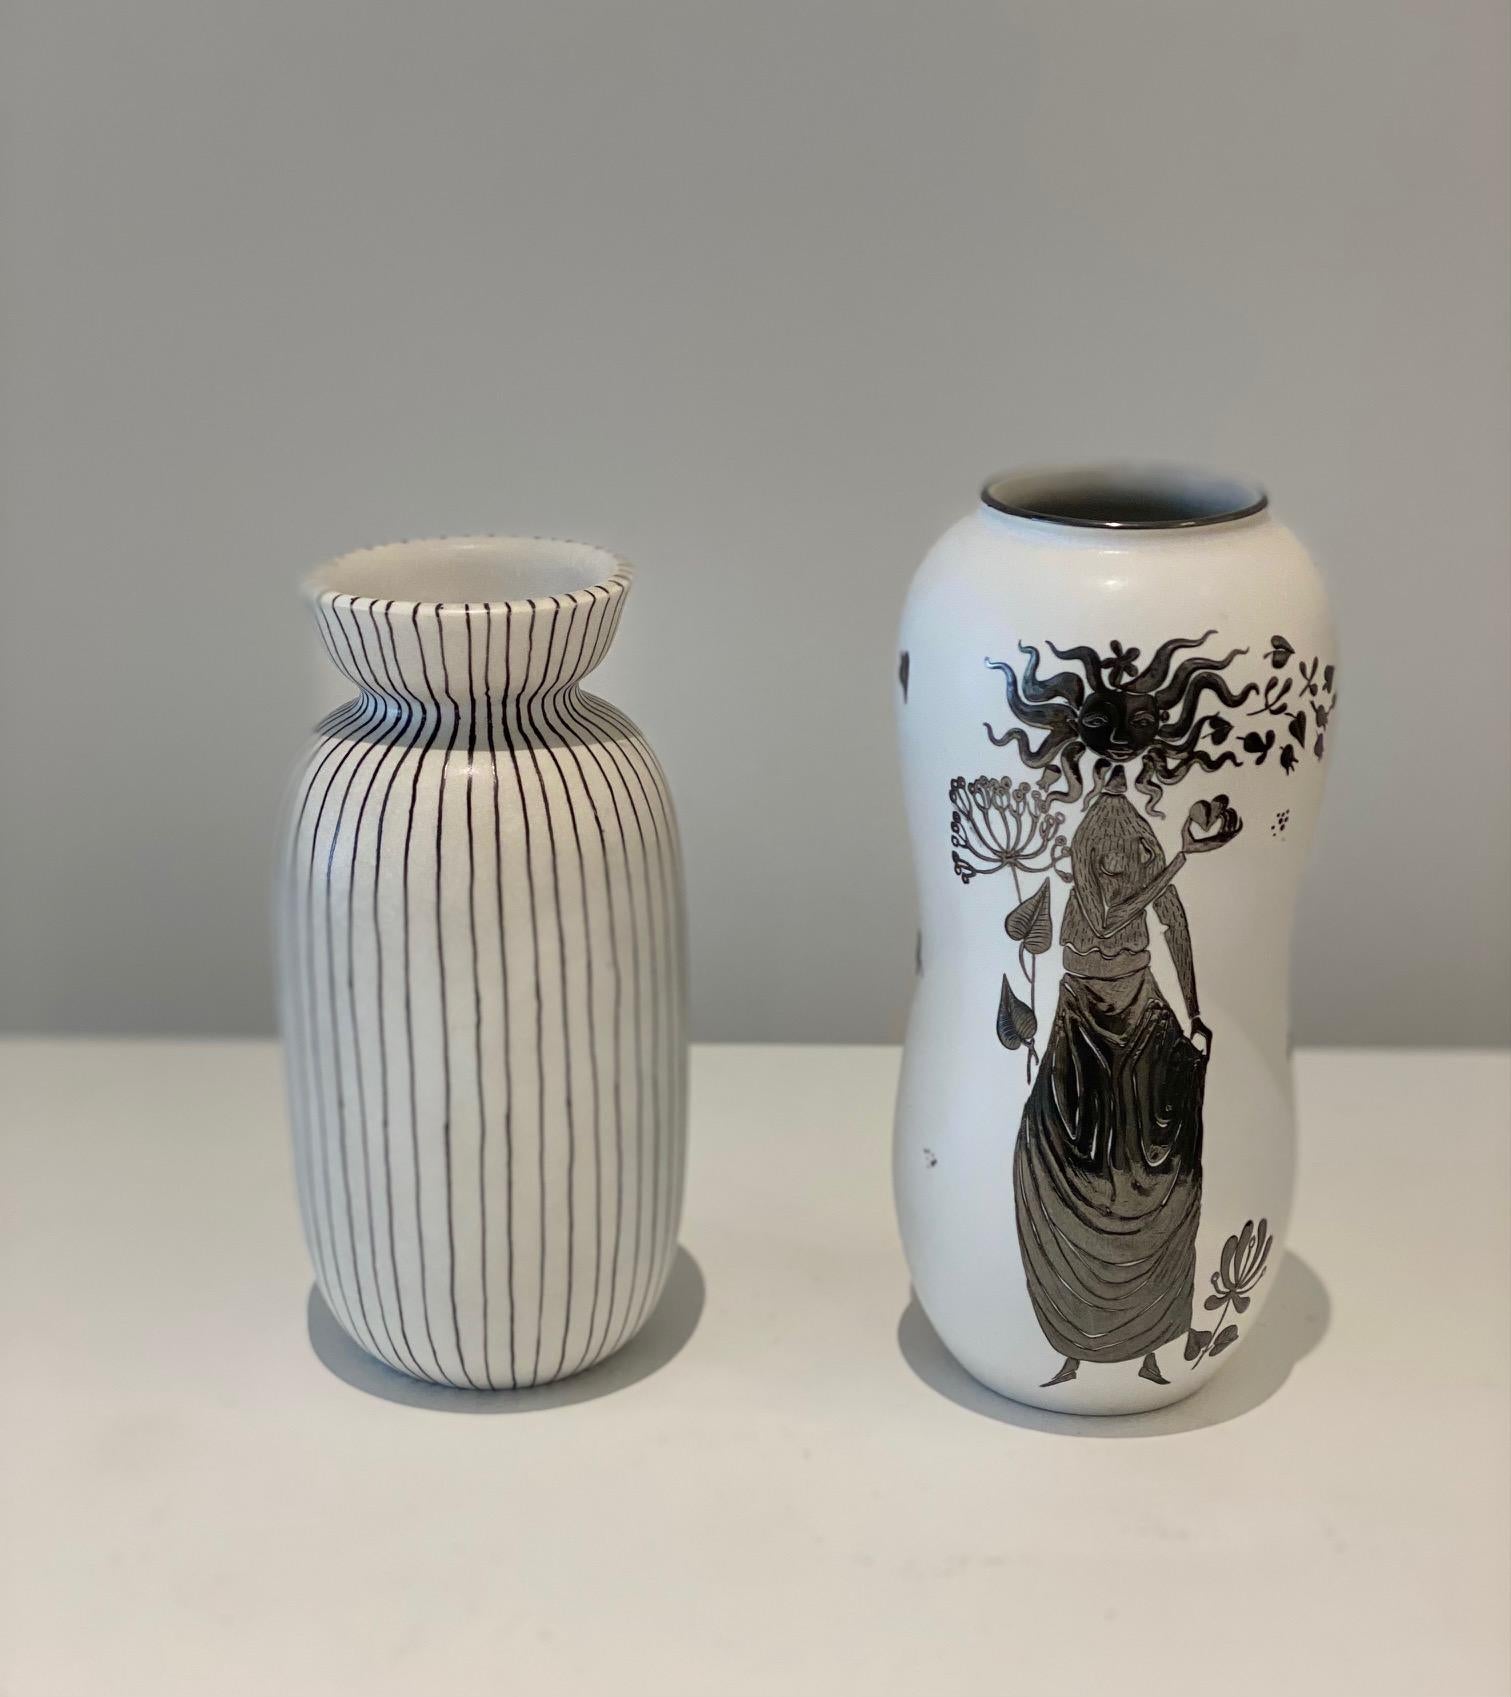 Stig Lindberg (1916-1982).
Zwei Vasen weiß und schwarz emaillierte Keramik .
Eine Vase 